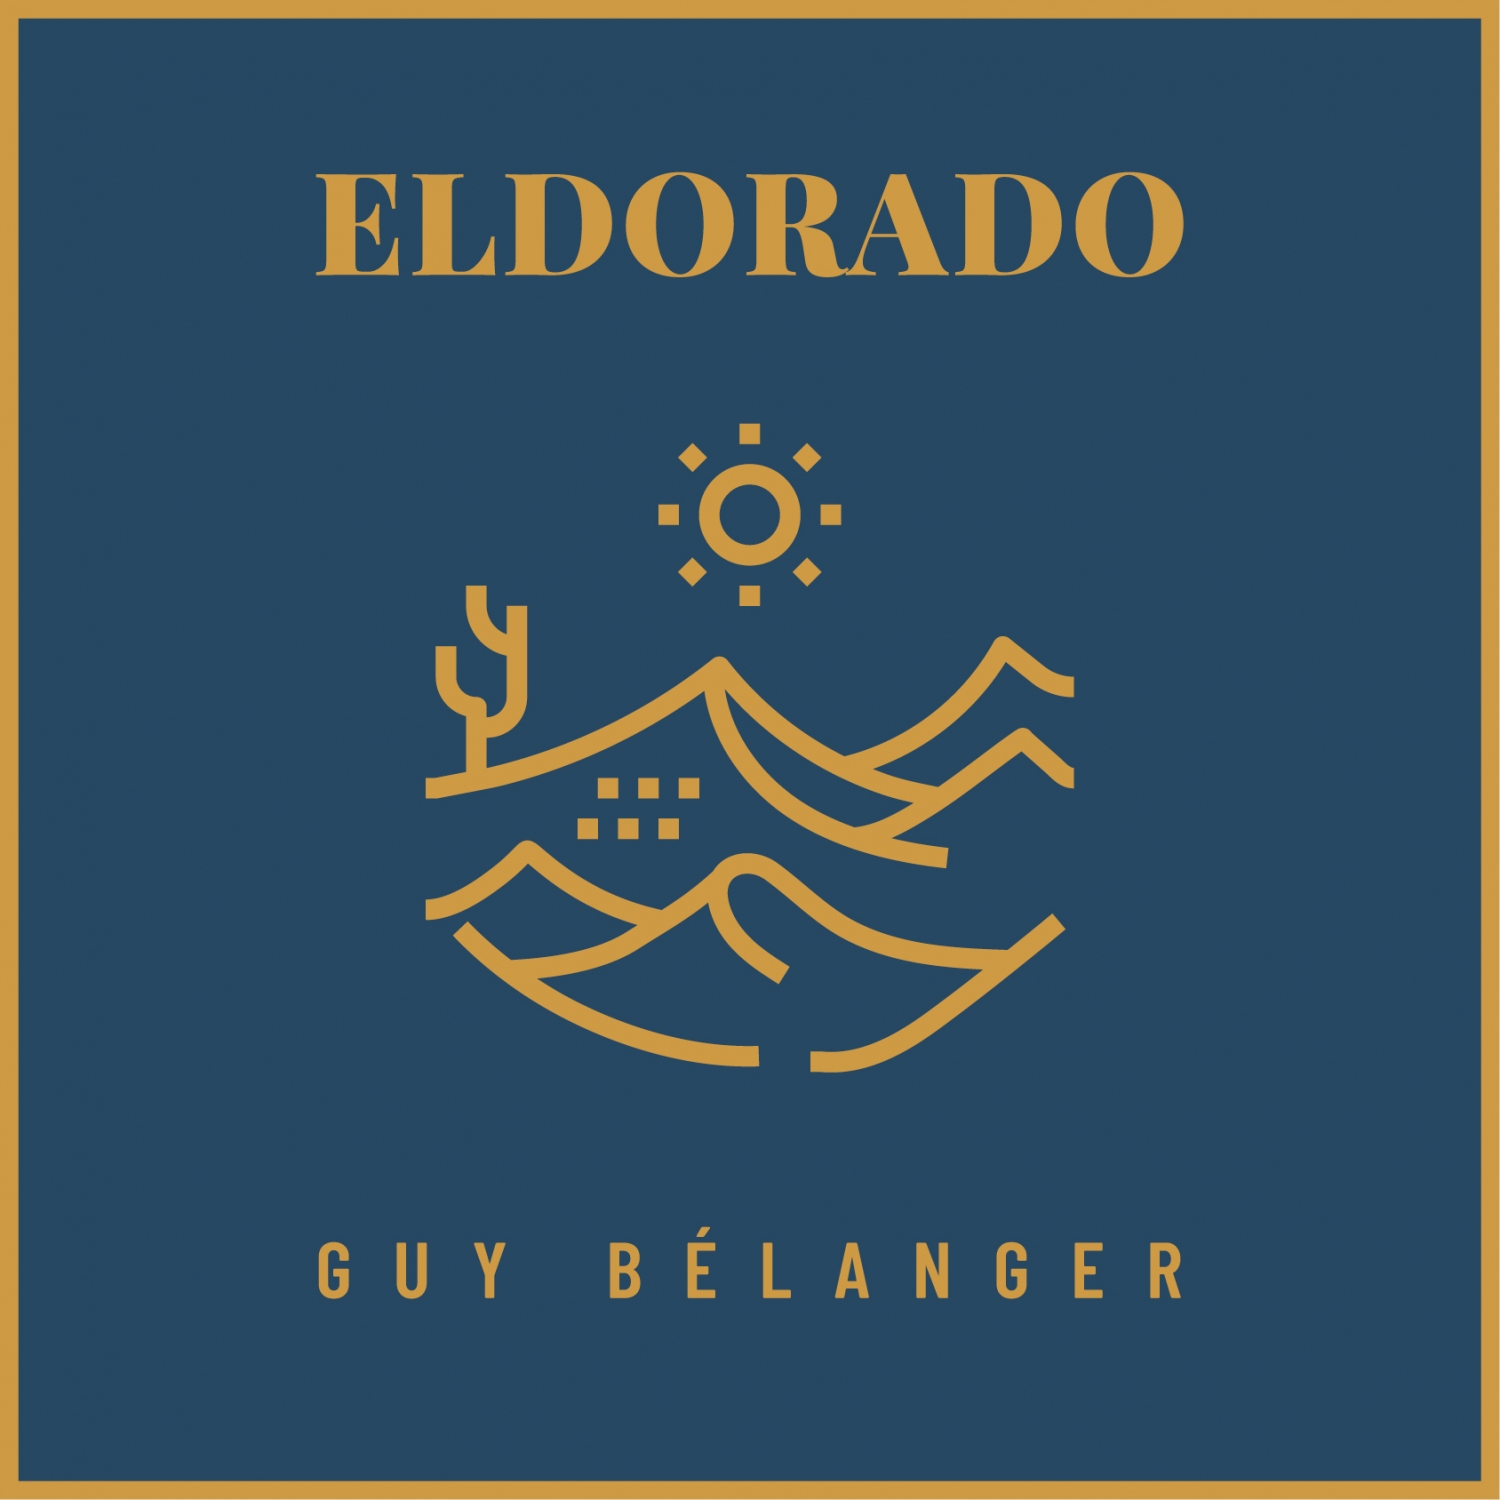 Guy Bélanger - Eldorado